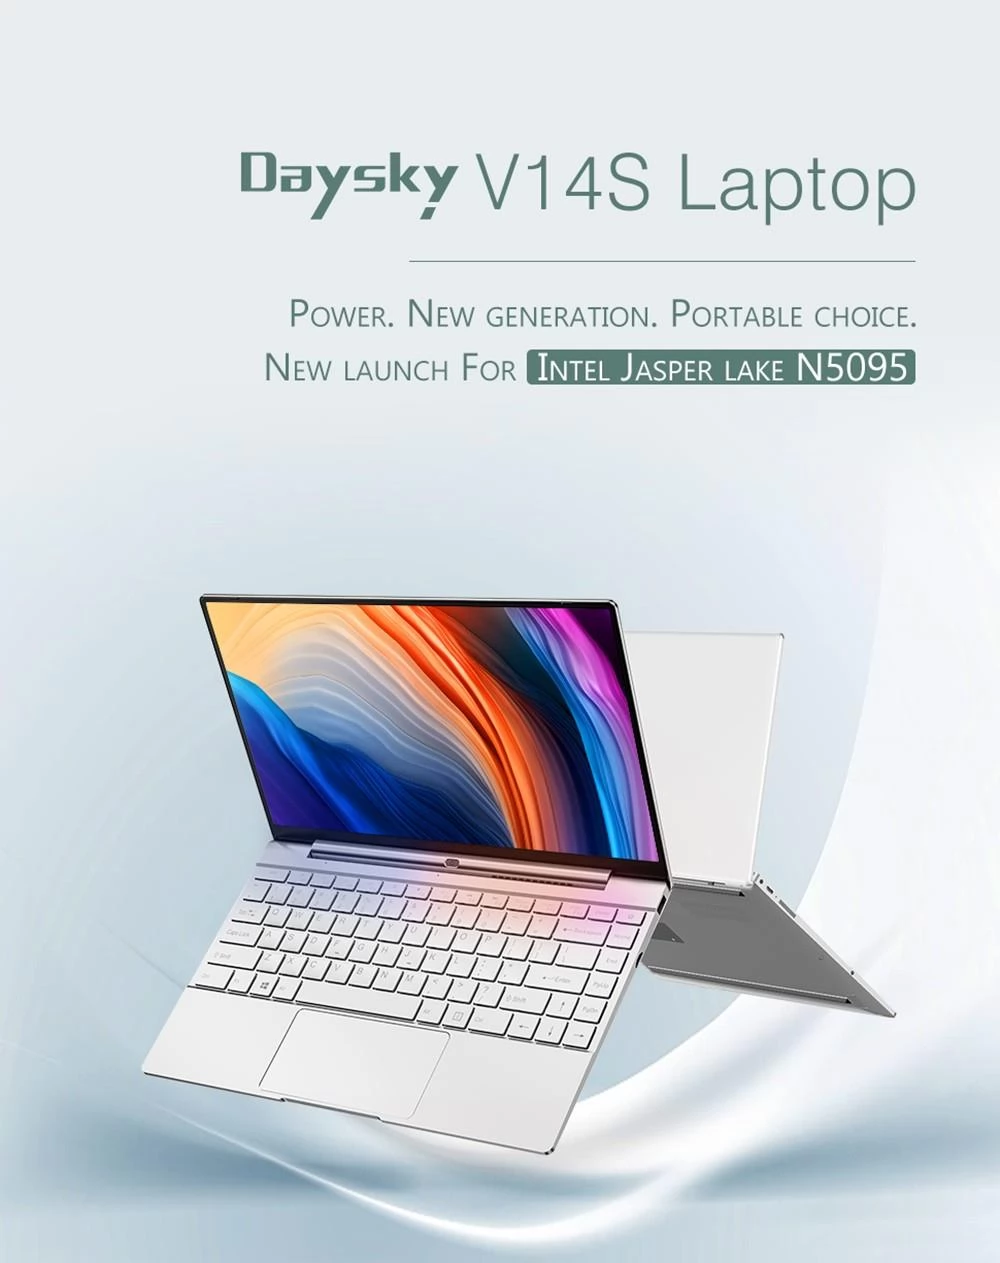 Daysky V14S 14.1 inch Laptop Intel Celeron N5095 12GB LPDDR4 256G SSD 1080P FHD with Backlight Windows 10